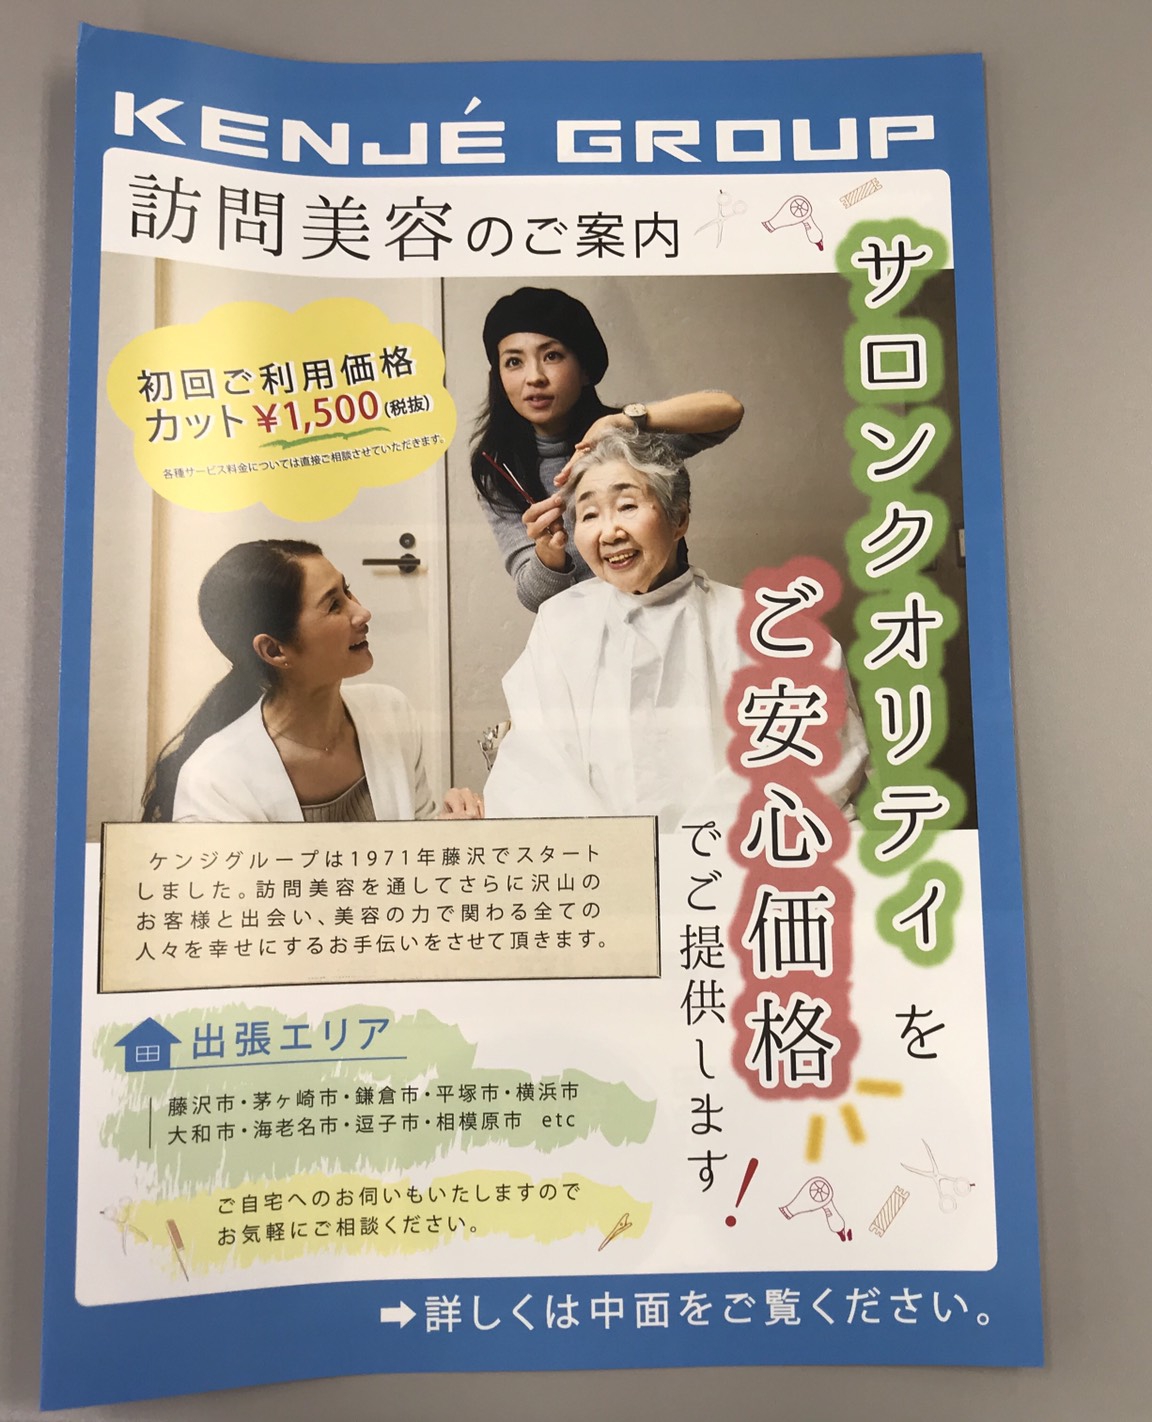 訪問美容パンフレット第二弾できました ケンジグループ訪問美容 神奈川県 湘南エリアで人気の美容室 Kenje の訪問美容 出張美容サービス